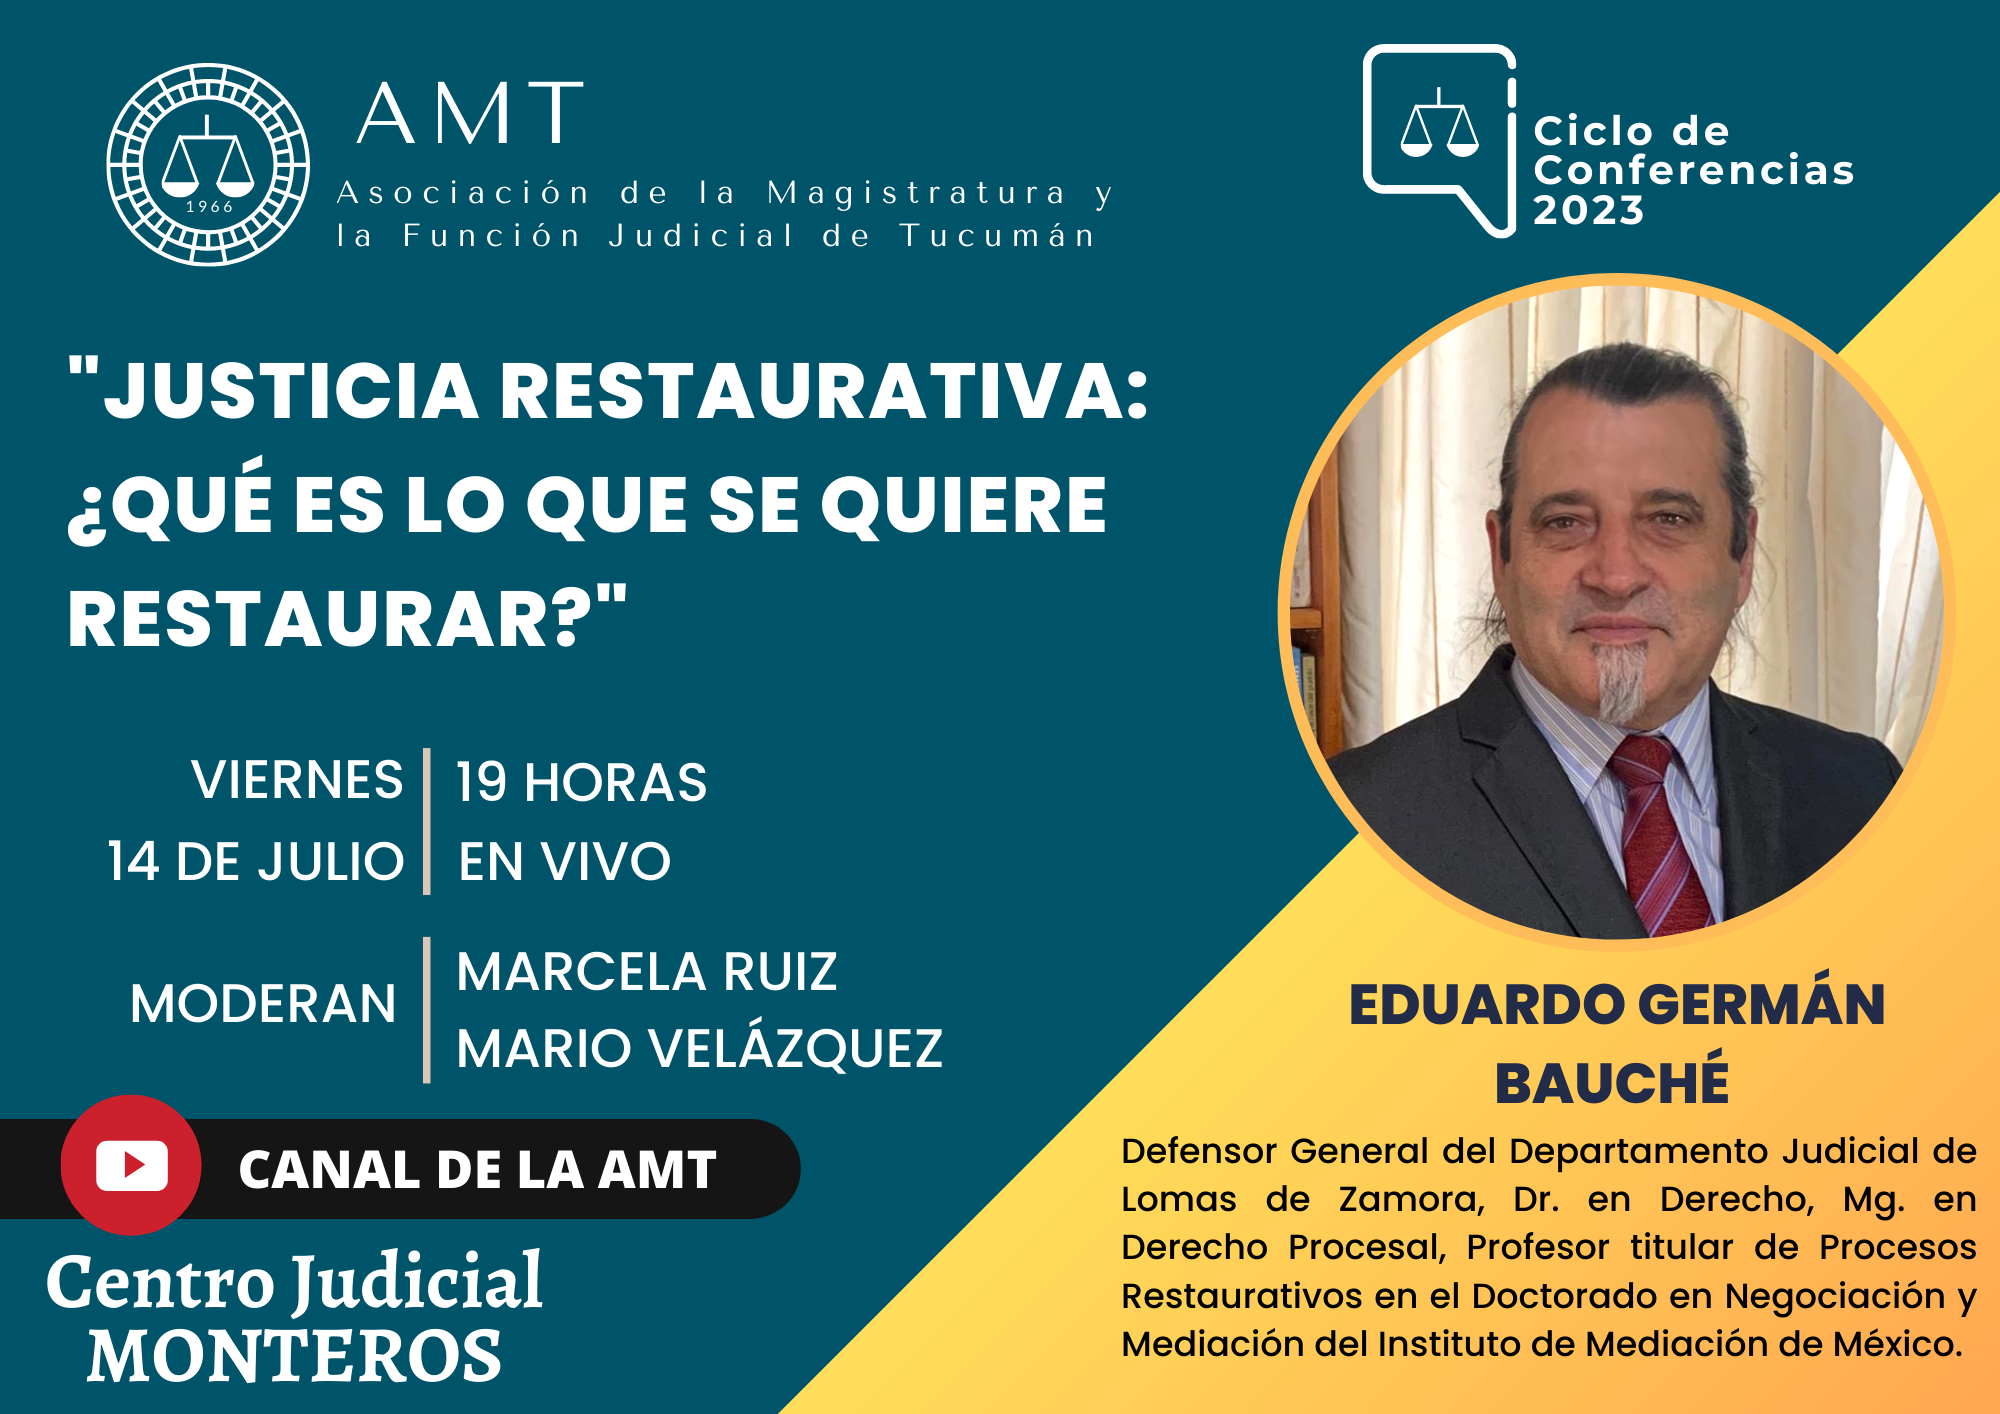 Vuelva a ver la conferencia de Eduardo Germán Bauché «Justicia Restaurativa: ¿Qué es lo que se quiere restaurar?» 